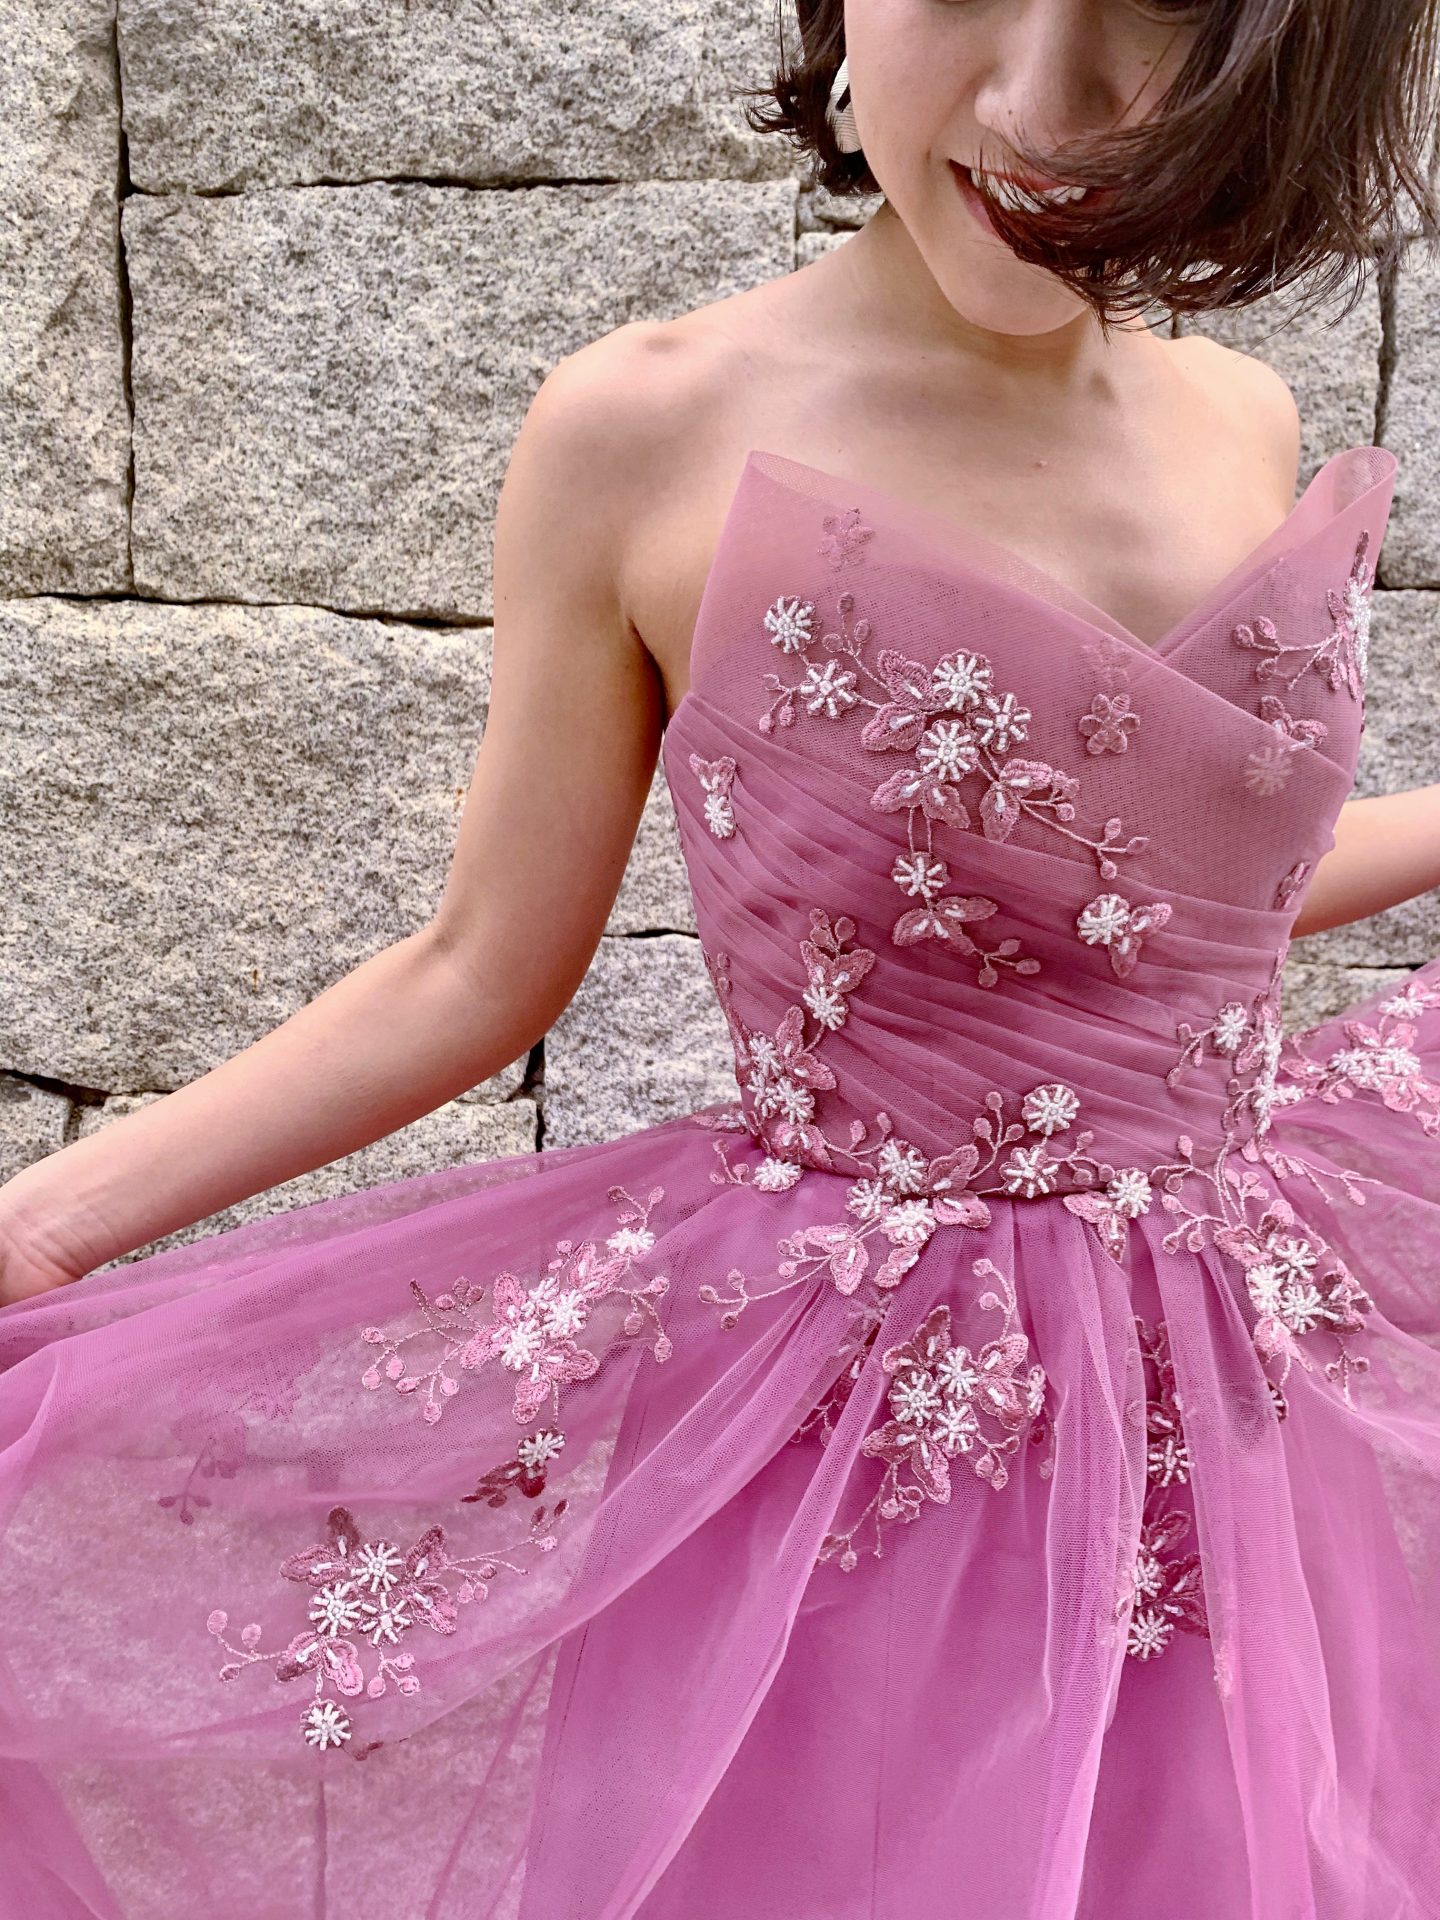 パープルのチュール素材のカラードレスは、秋挙式の花嫁様におすすめです。